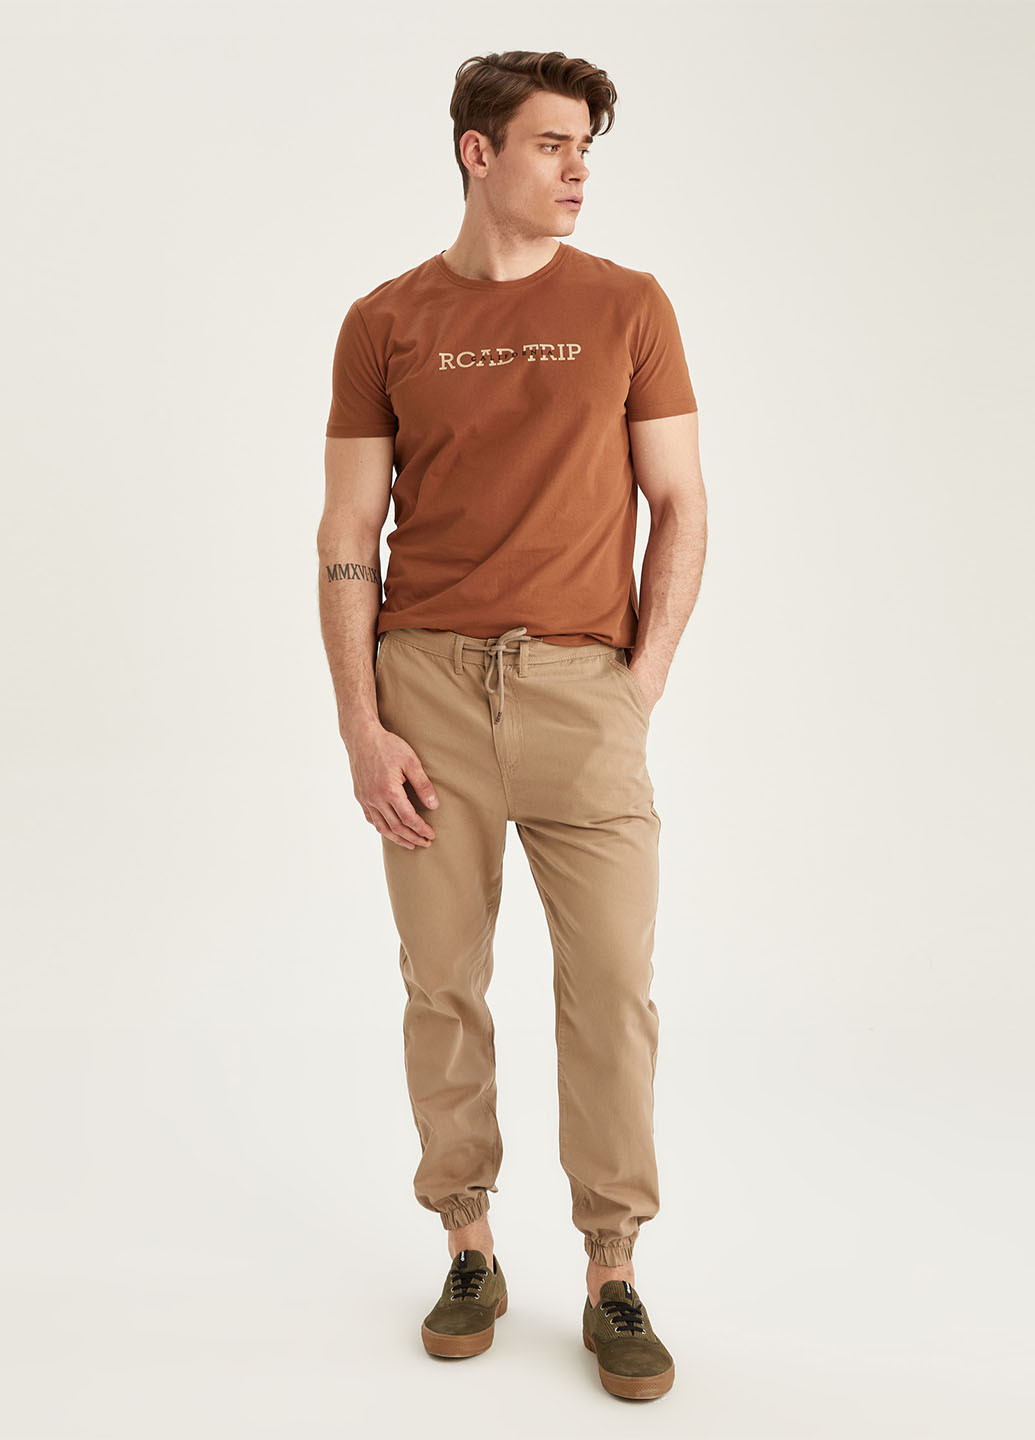 Светло-коричневая летняя футболка DeFacto